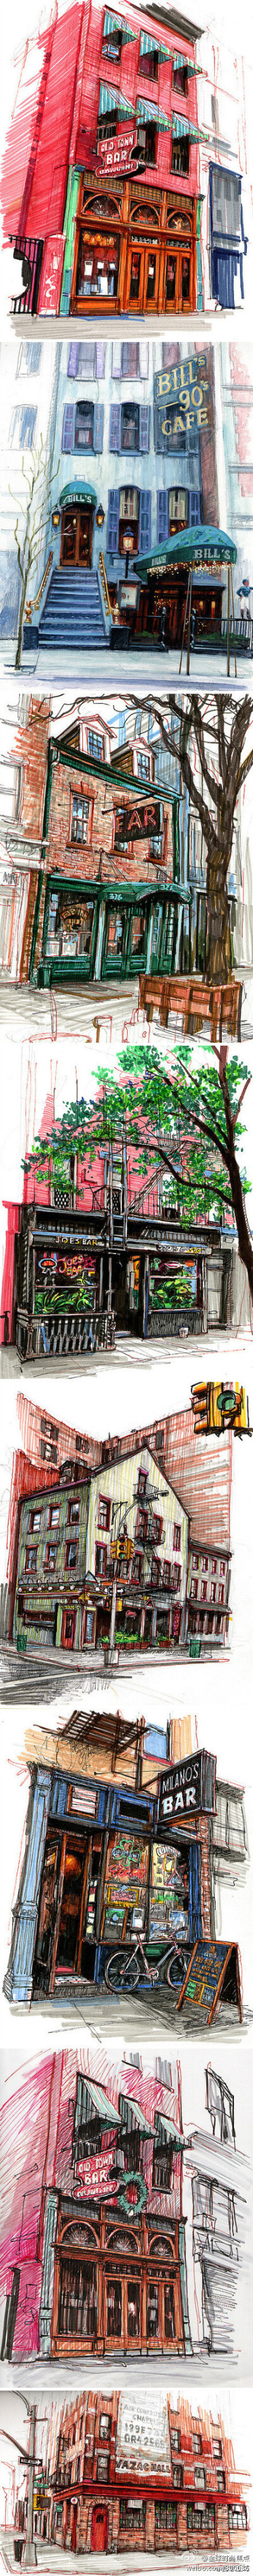 艺术家Stephen Gardner用他的彩笔记录下来一座又一座他光顾过的酒吧和咖啡馆，画面非常纪实并具有场景感，仿佛诉说着每个酒吧或咖啡馆曾经发生的故事……